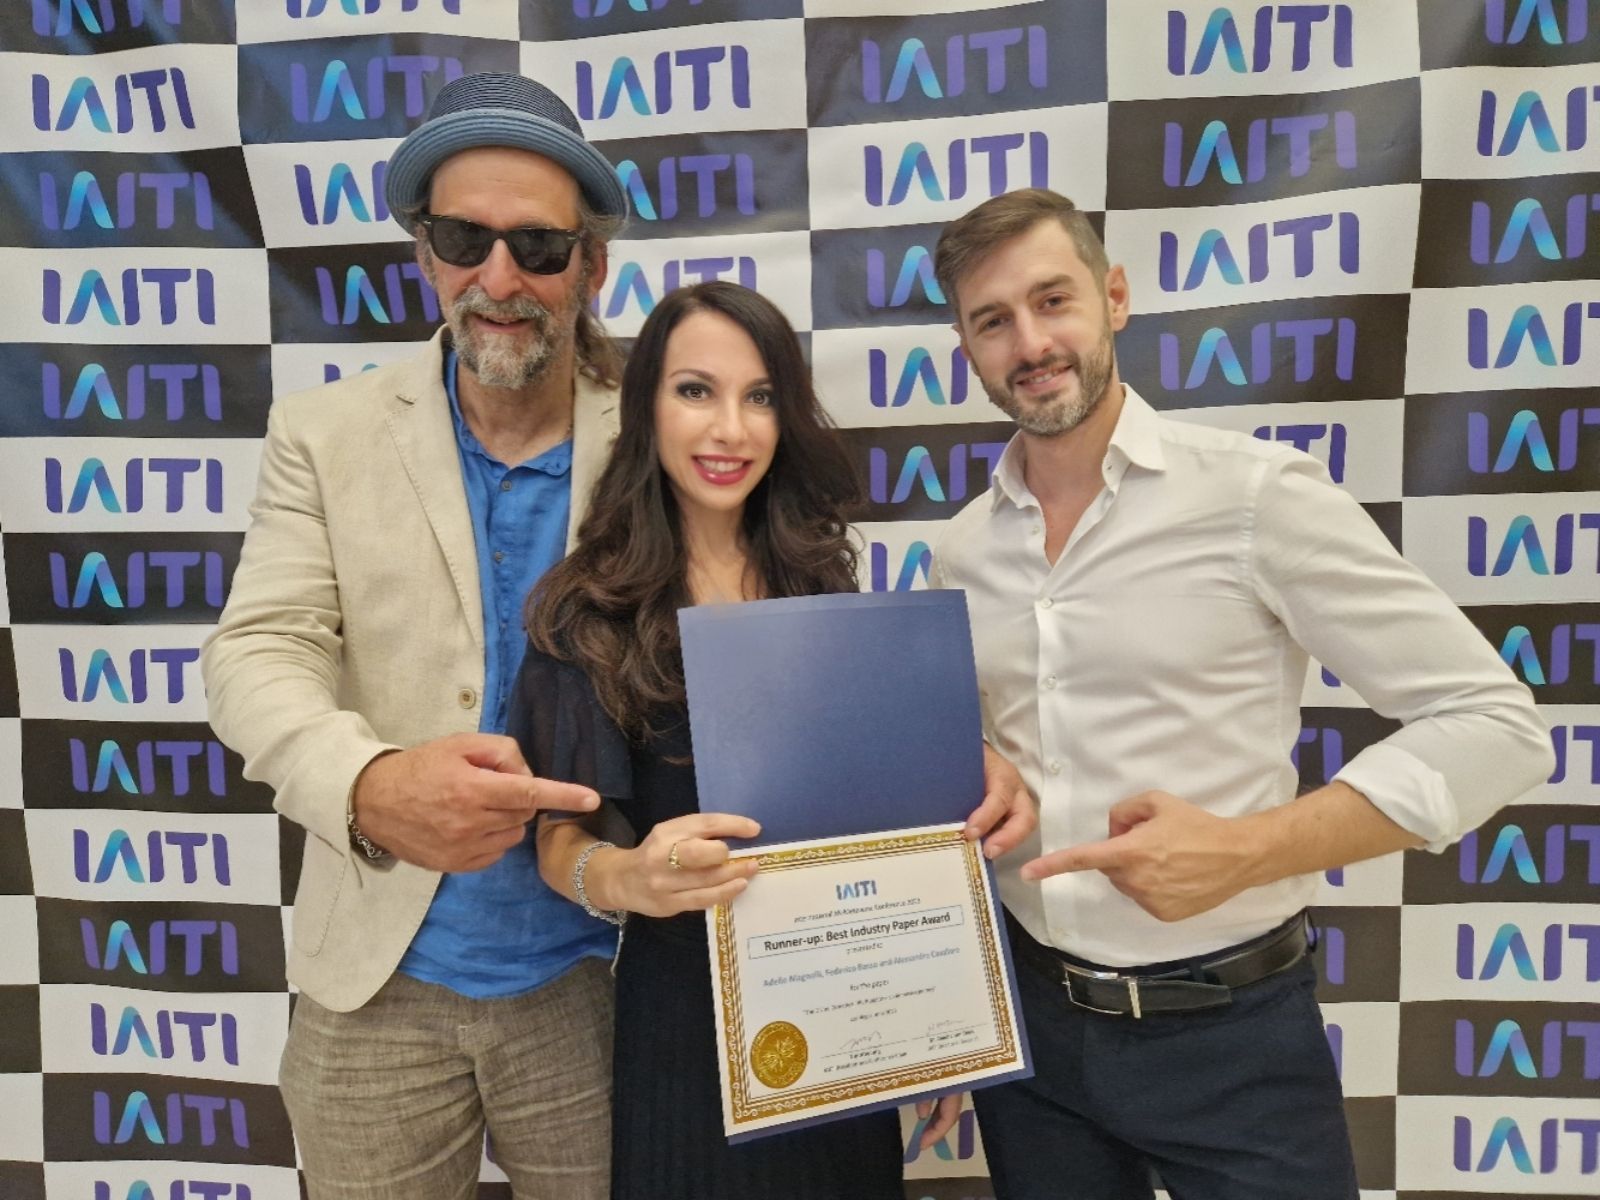 Federico Basso, Adele Magnelli e Alessandro Cavallaro sono stati premiati con il Best Paper Award per La Divina Commedia VR, il Purgatorio, un viaggio immersivo